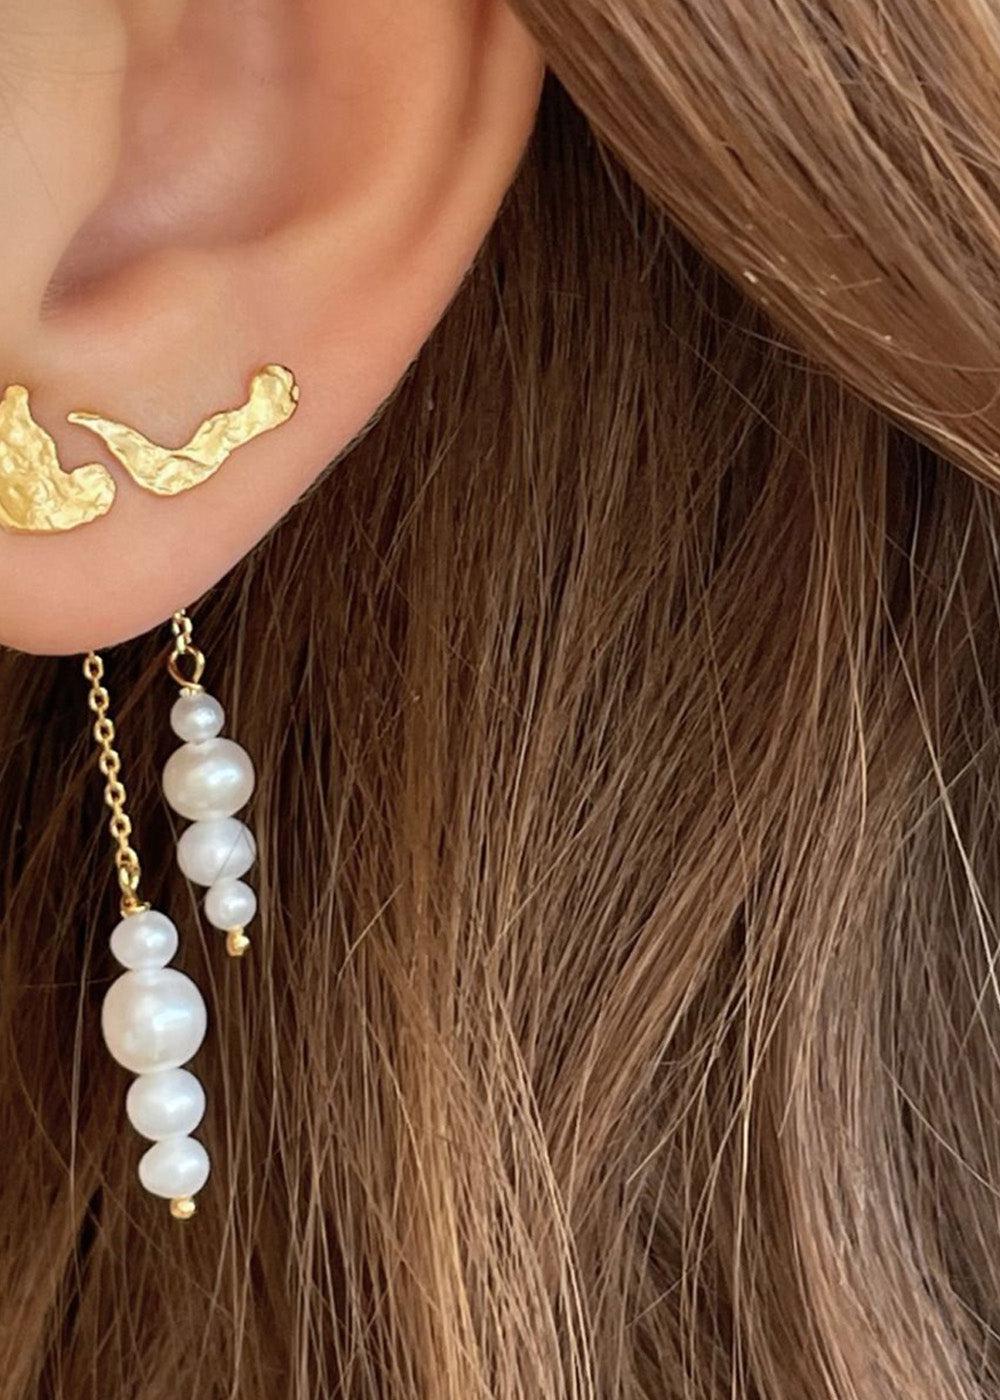 Pearl Berries Behind Ear Earring - Gold